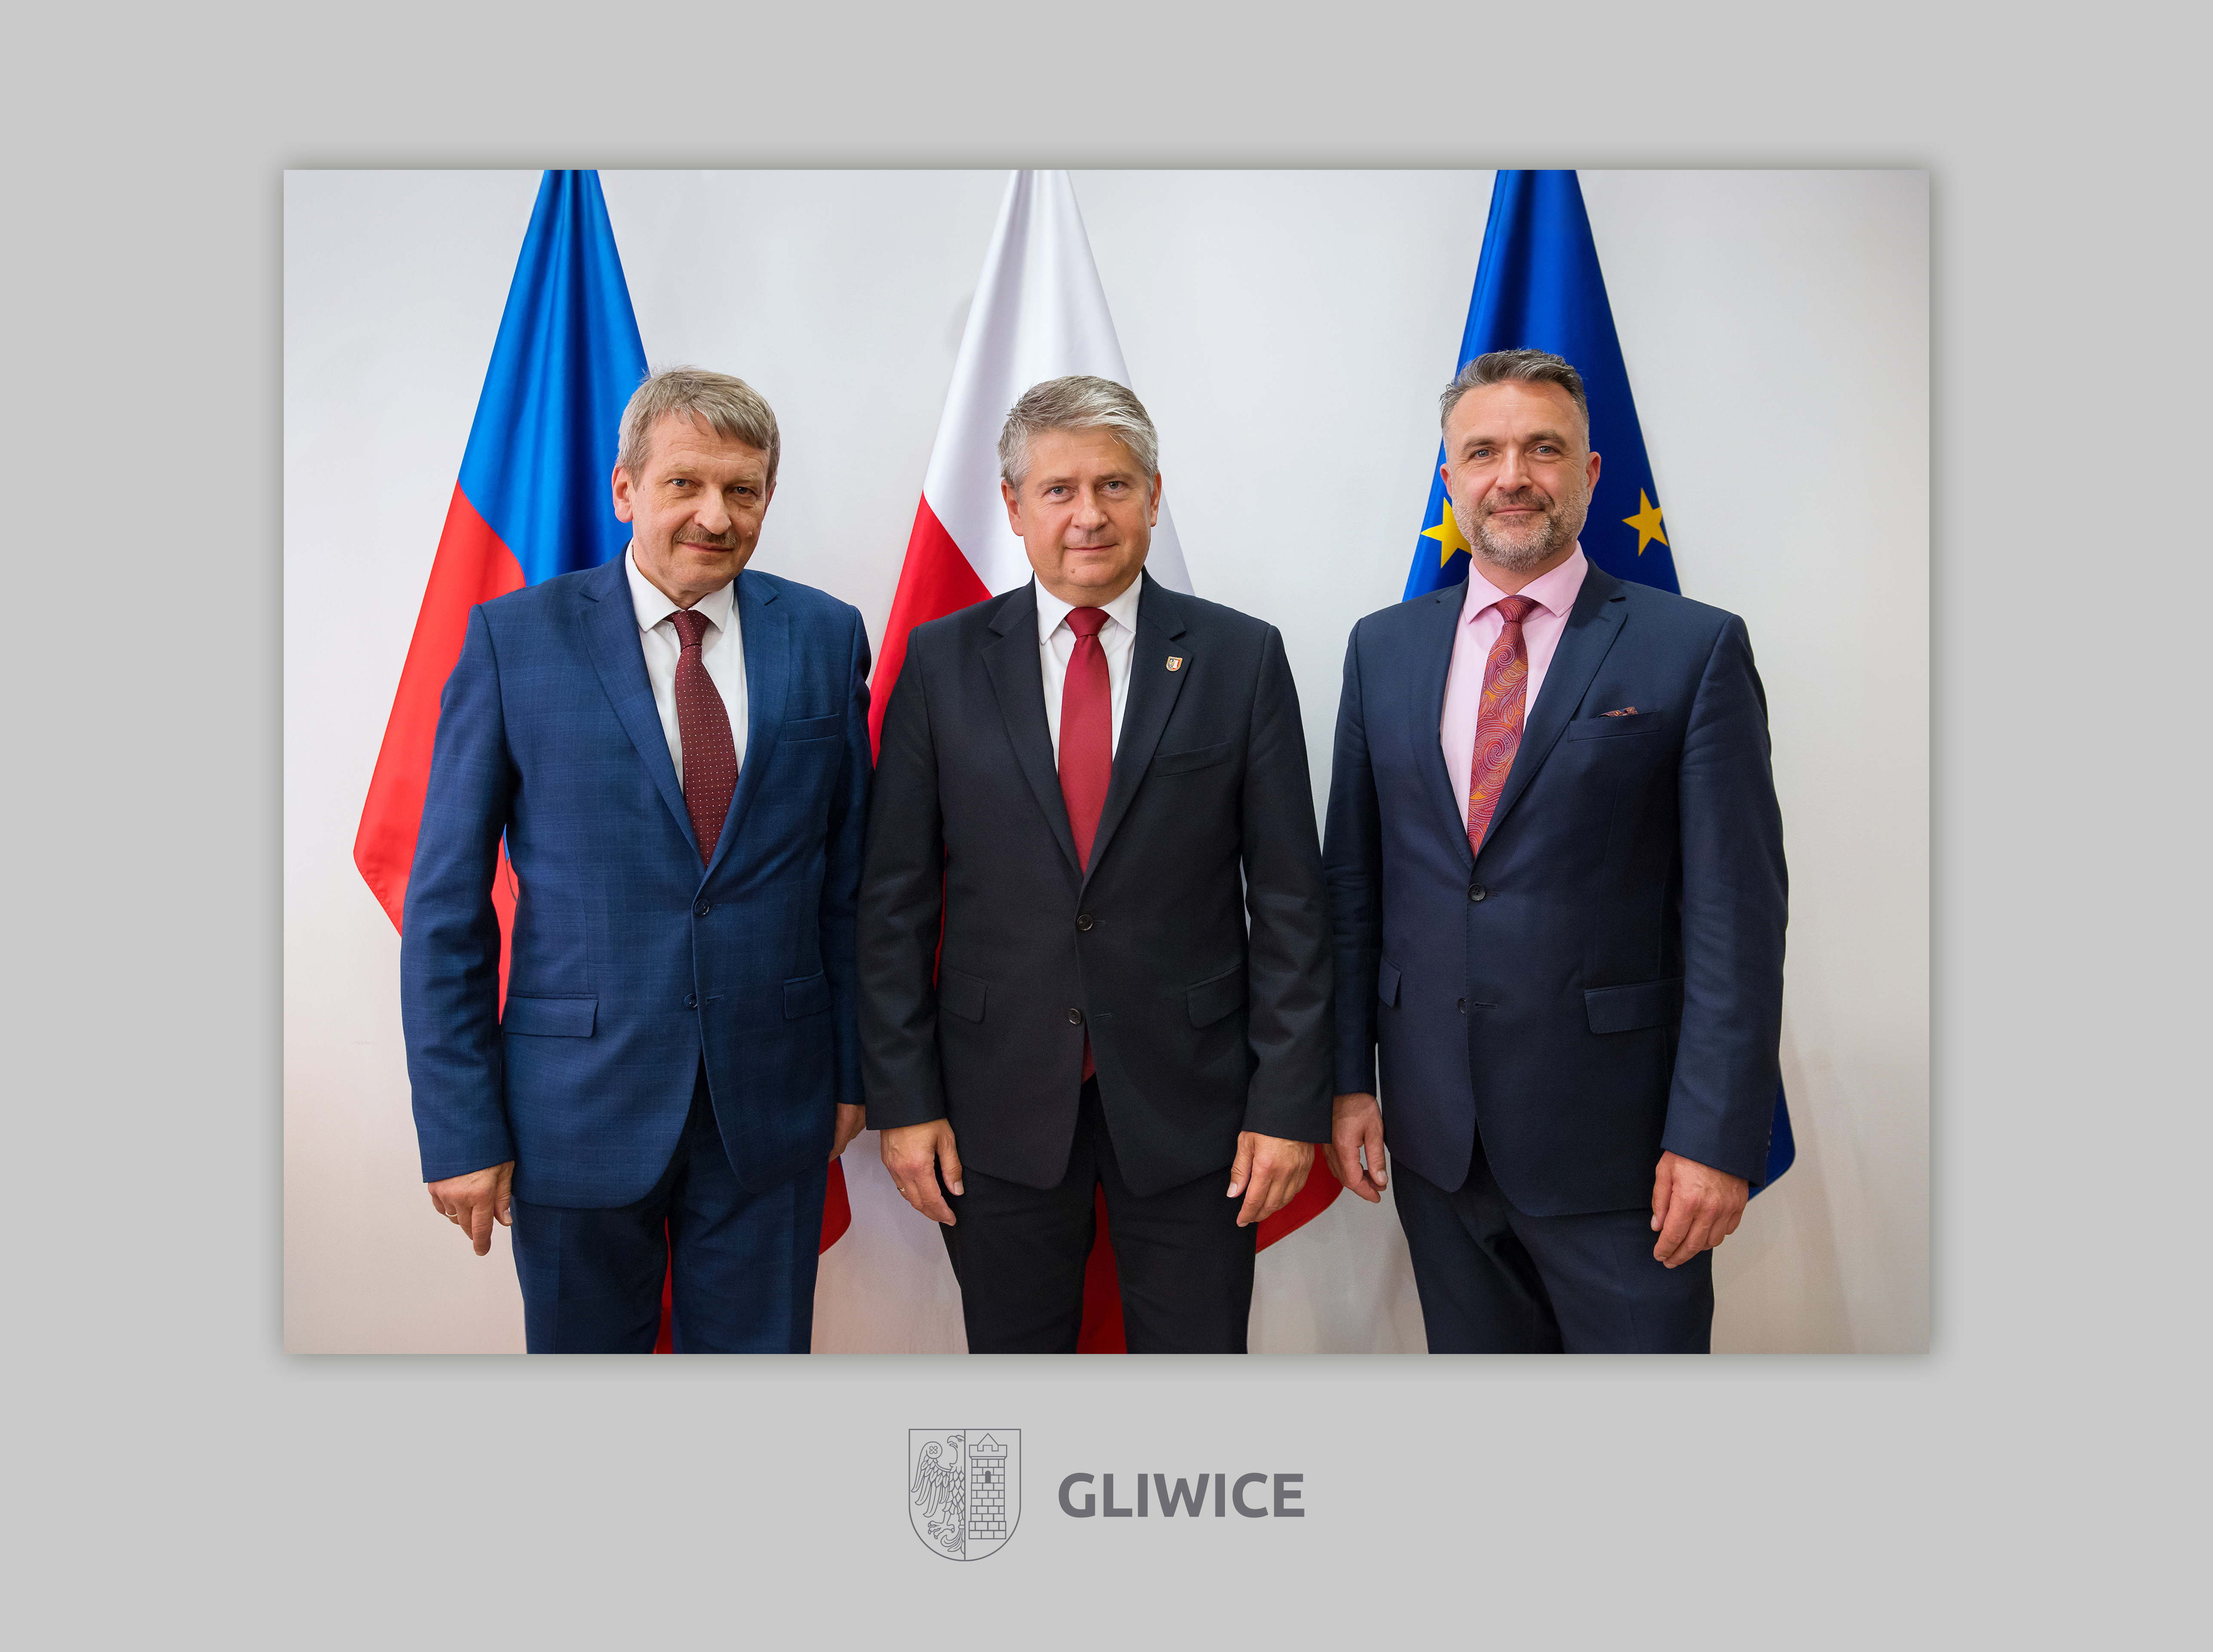 Prezydium Rady Miasta Gliwice wybrane